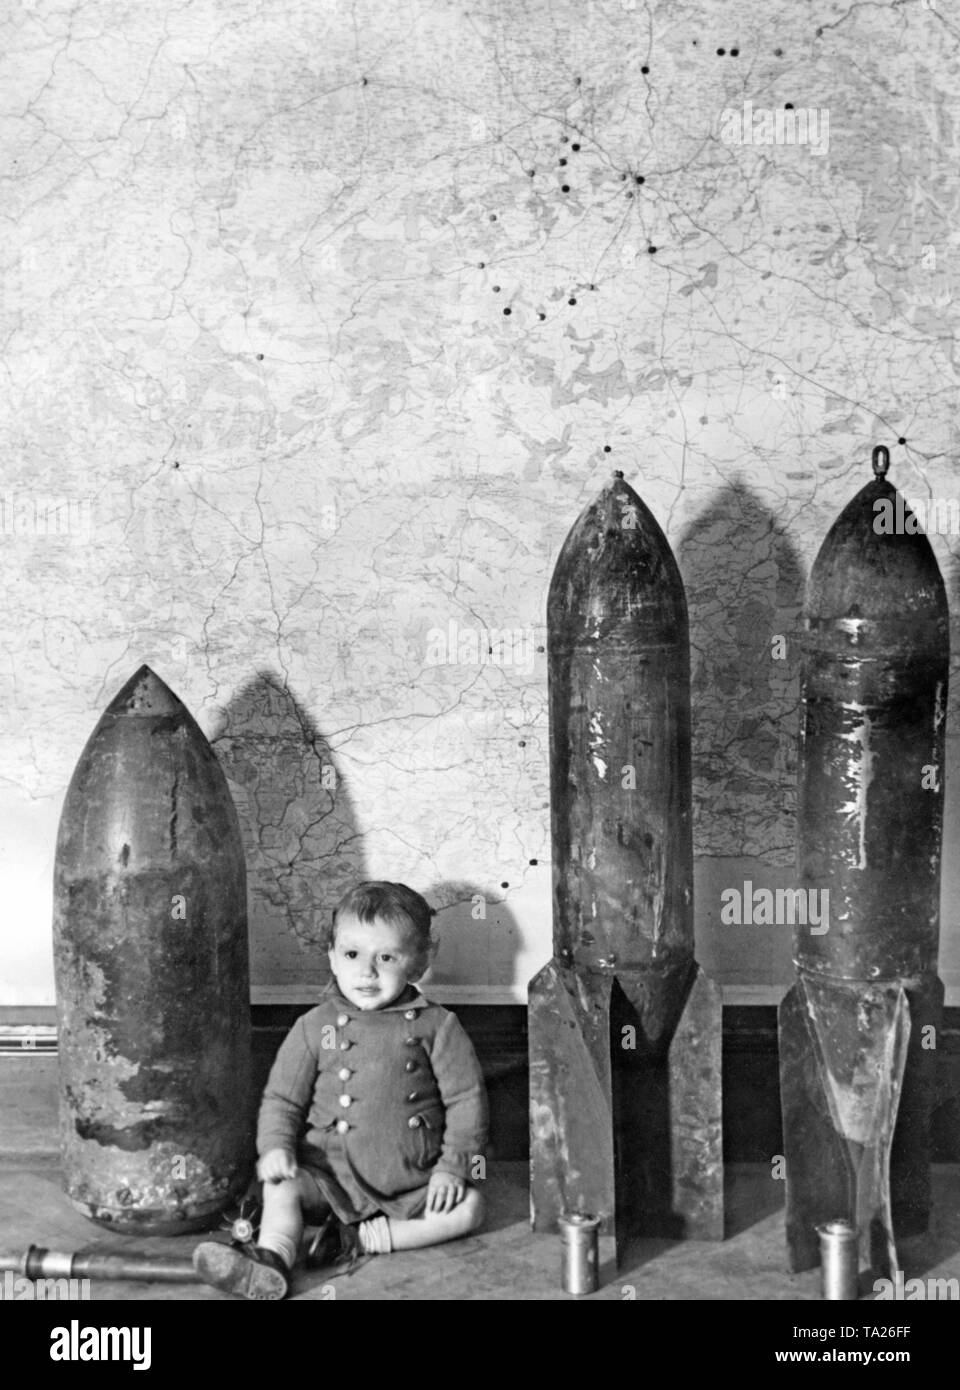 Foto von deutschen oder italienischen Klamotten in Madrid im Jahr 1937. Ein Kleinkind war neben der Antenne Bomben gelegt. Im Hintergrund, eine Karte von Spanien mit der Hauptstadt Madrid, wo die Bombardierungen des Nationalen Spanischen Truppen angezeigt werden. Vor den Bomben, die detonatoren. Stockfoto